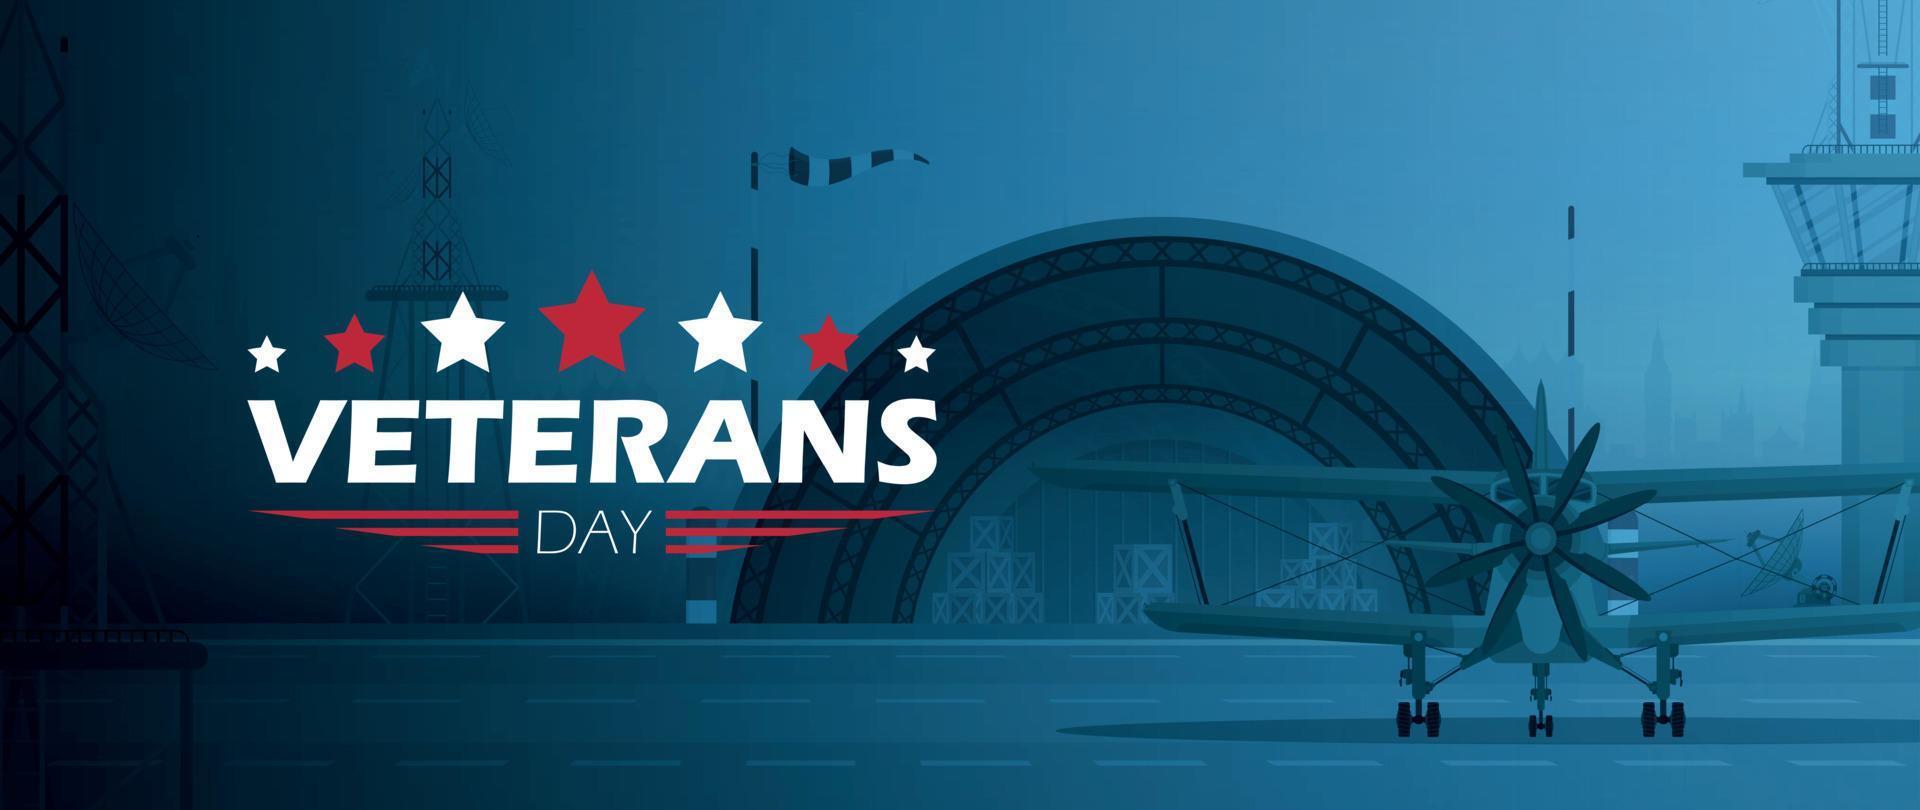 cartel del día de los veteranos. honrando a todos los que sirvieron. ilustración del día de los veteranos con bandera americana vector